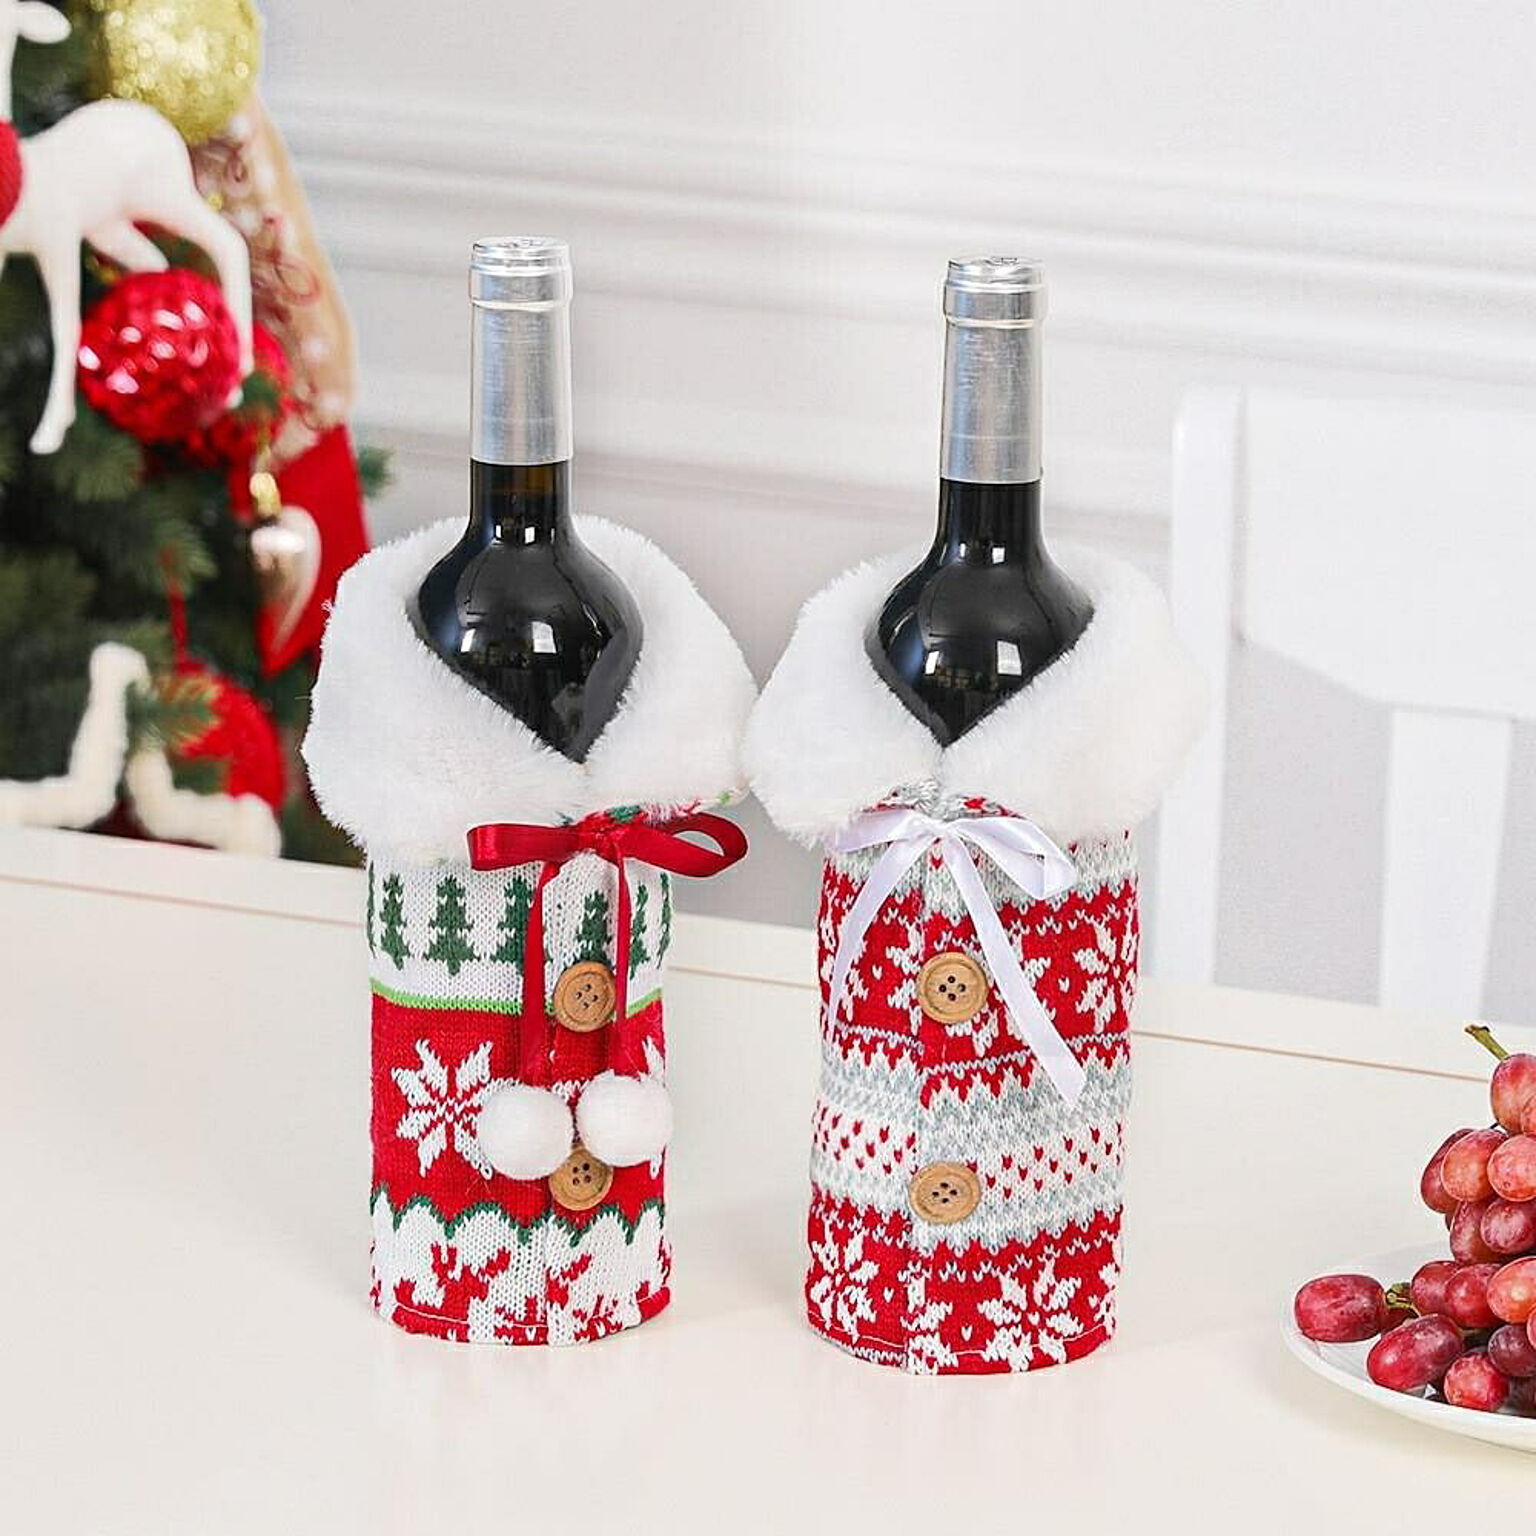 【在庫限り】雑貨 ワインボトルカバー 赤リボンor白リボン ニット ボトルカバー クリスマスデコレーション クリスマスパーティー かわいい デザイン サンタクロース ワイン